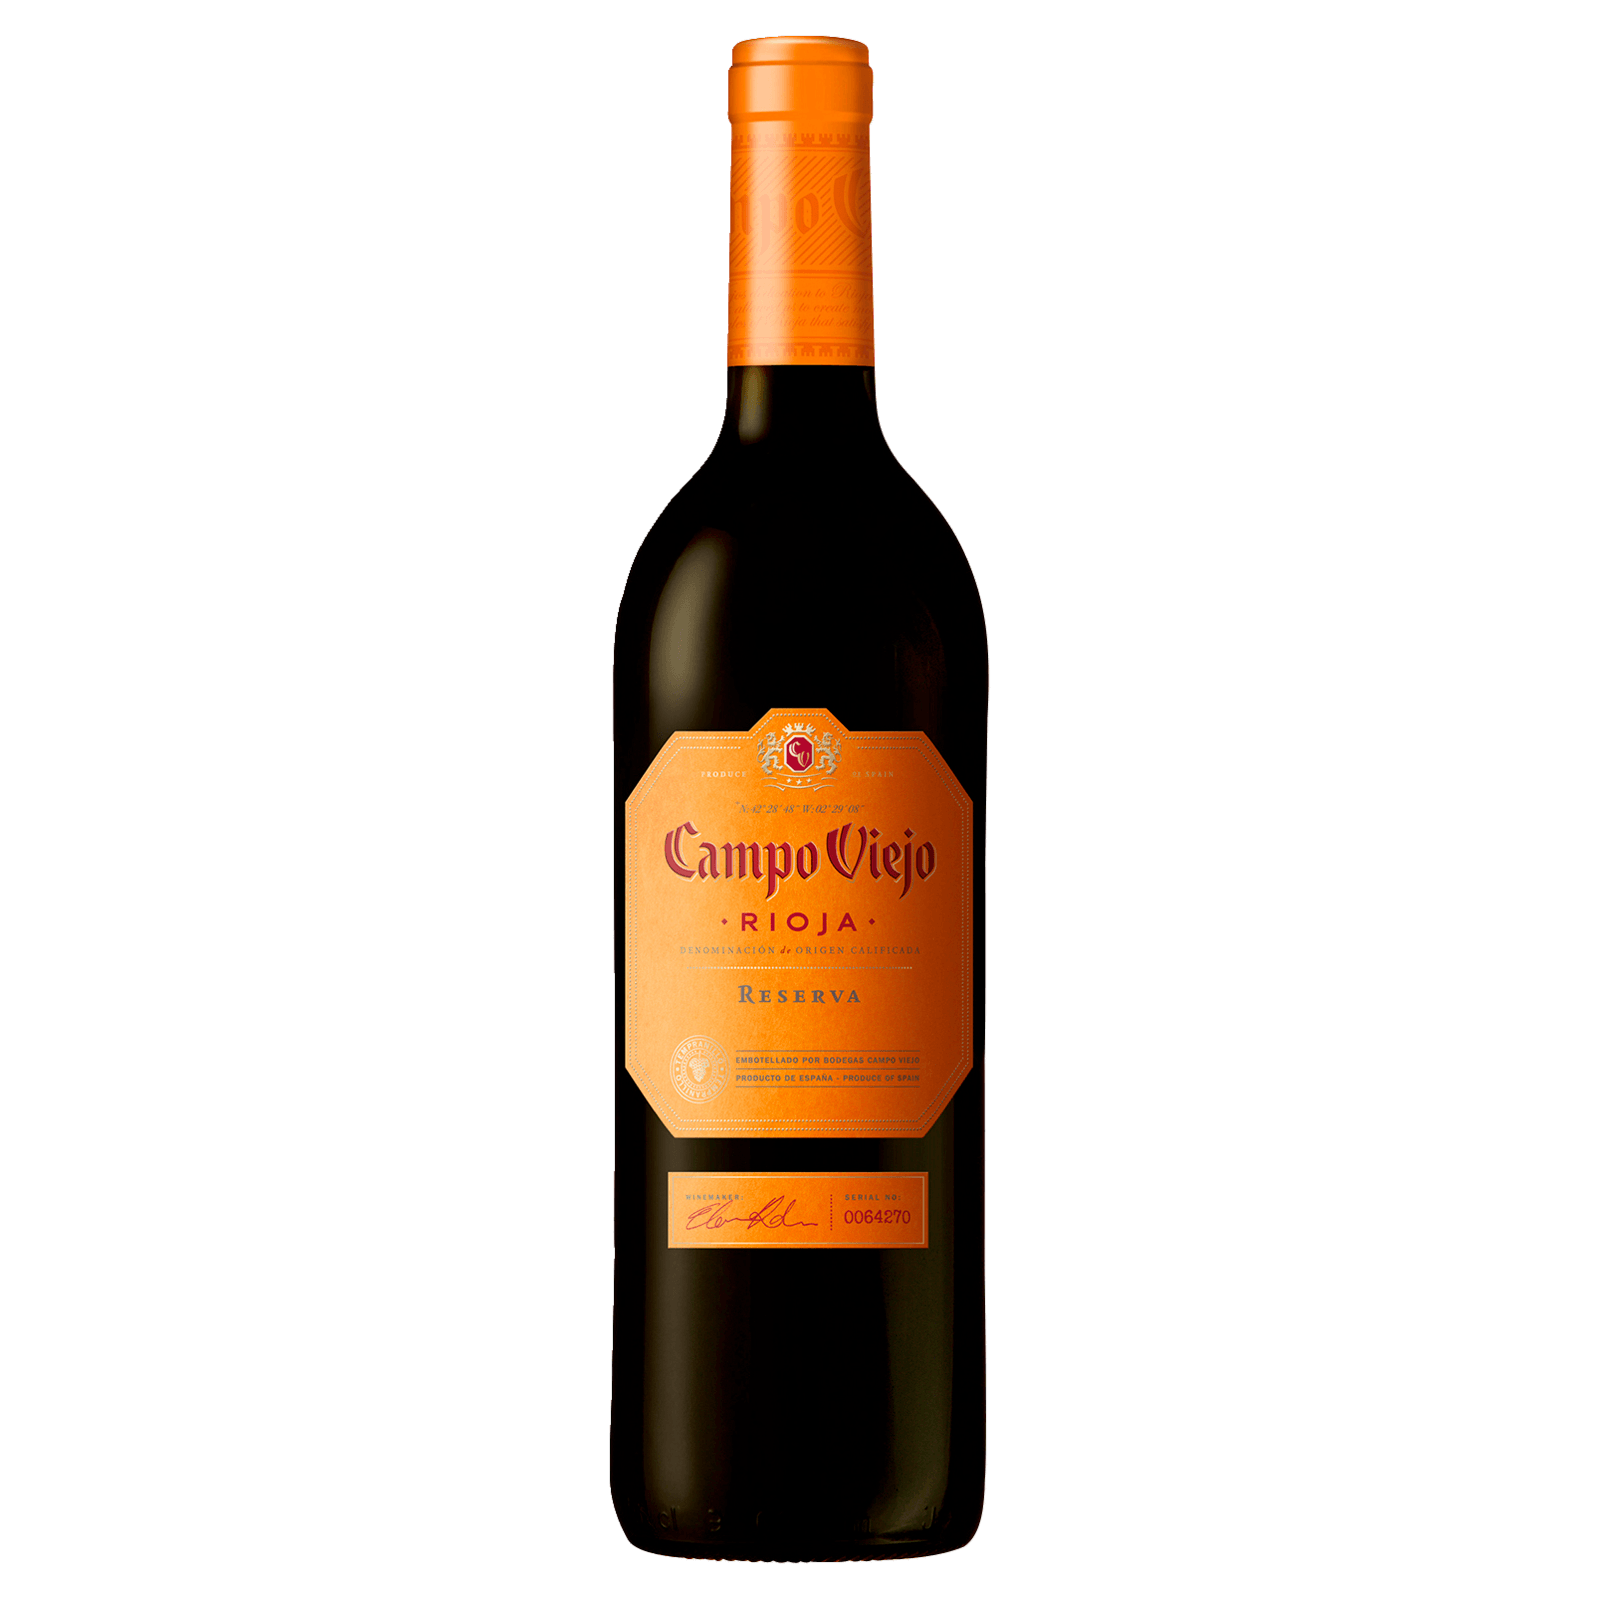 Cepa Lebrel von für Rioja Lidl 4,99€ Rotwein DOCa Reserva 2017 trocken